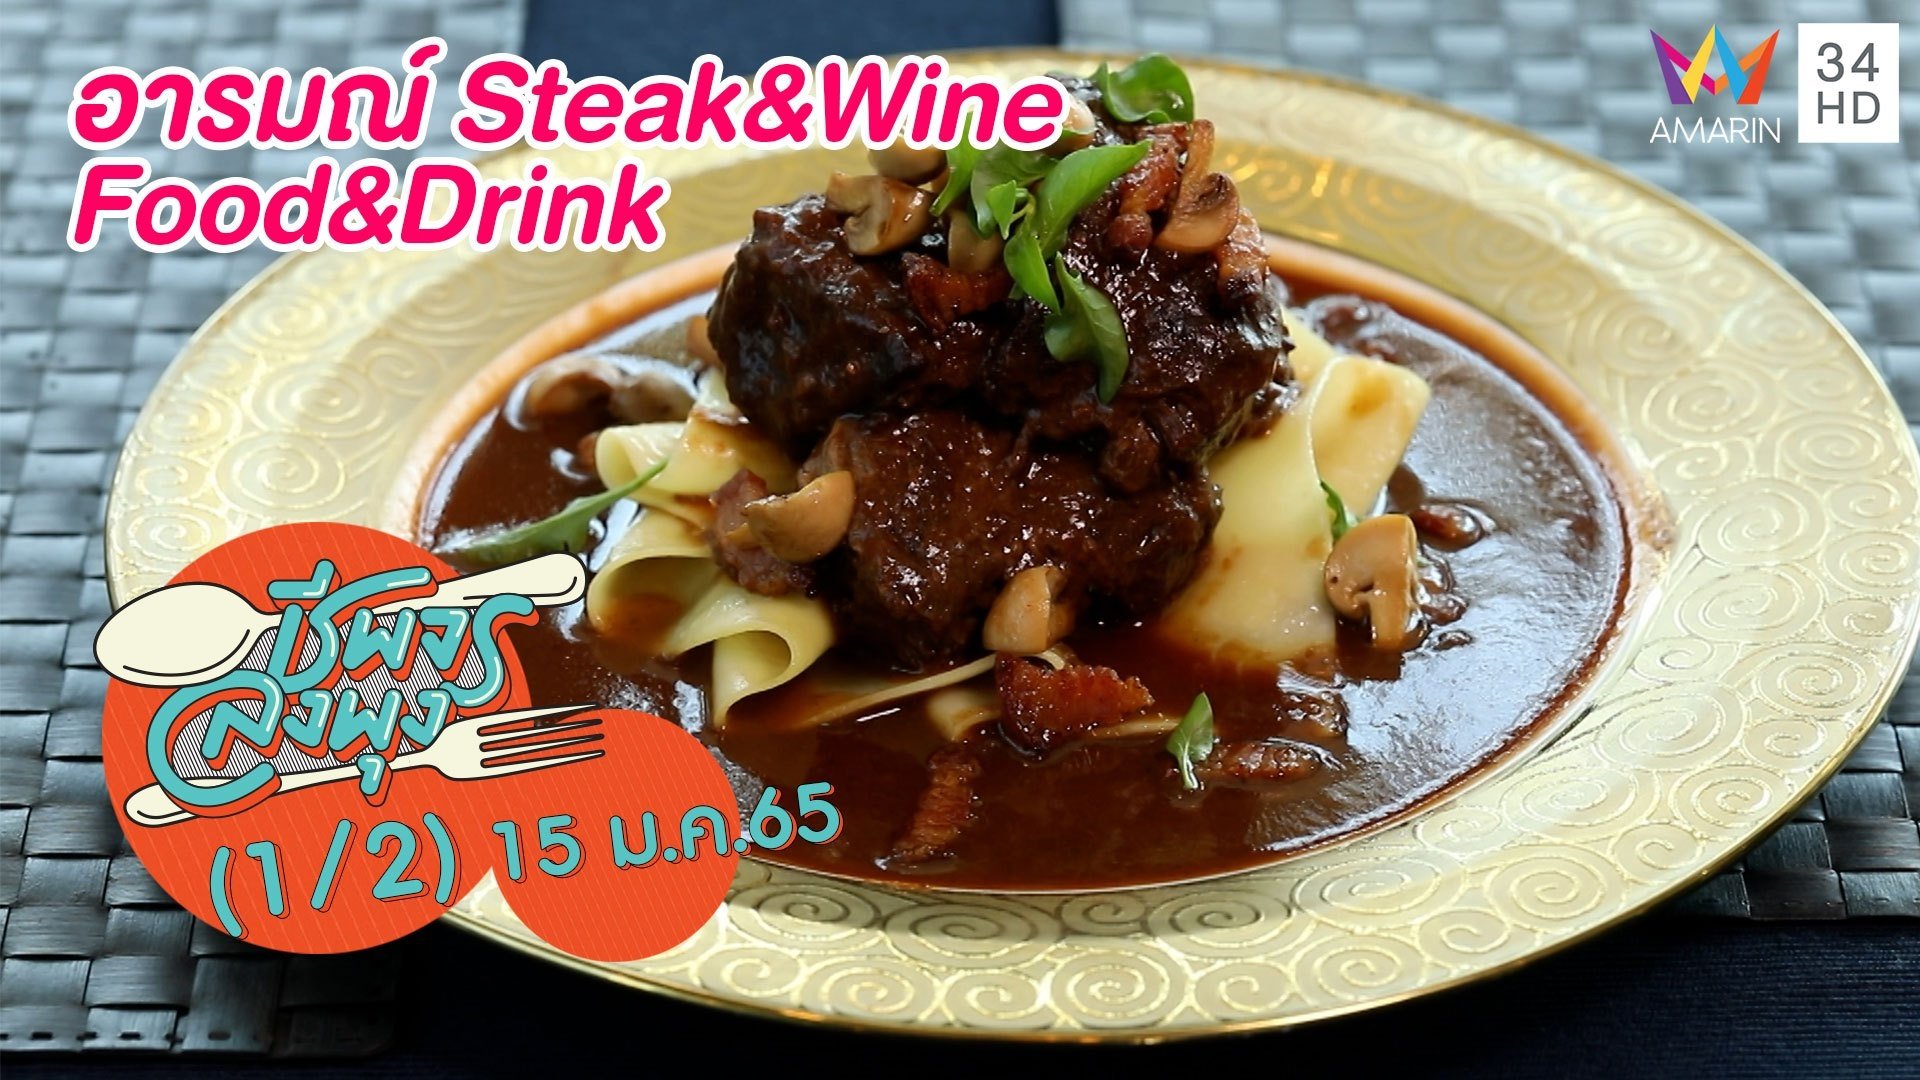 เด็ดเข้มข้นจัดจ้าน @ร้านอารมณ์ Steak&Wine Food&Drink | ชีพจรลงพุง | 15 ม.ค. 65 (1/2) | AMARIN TVHD34